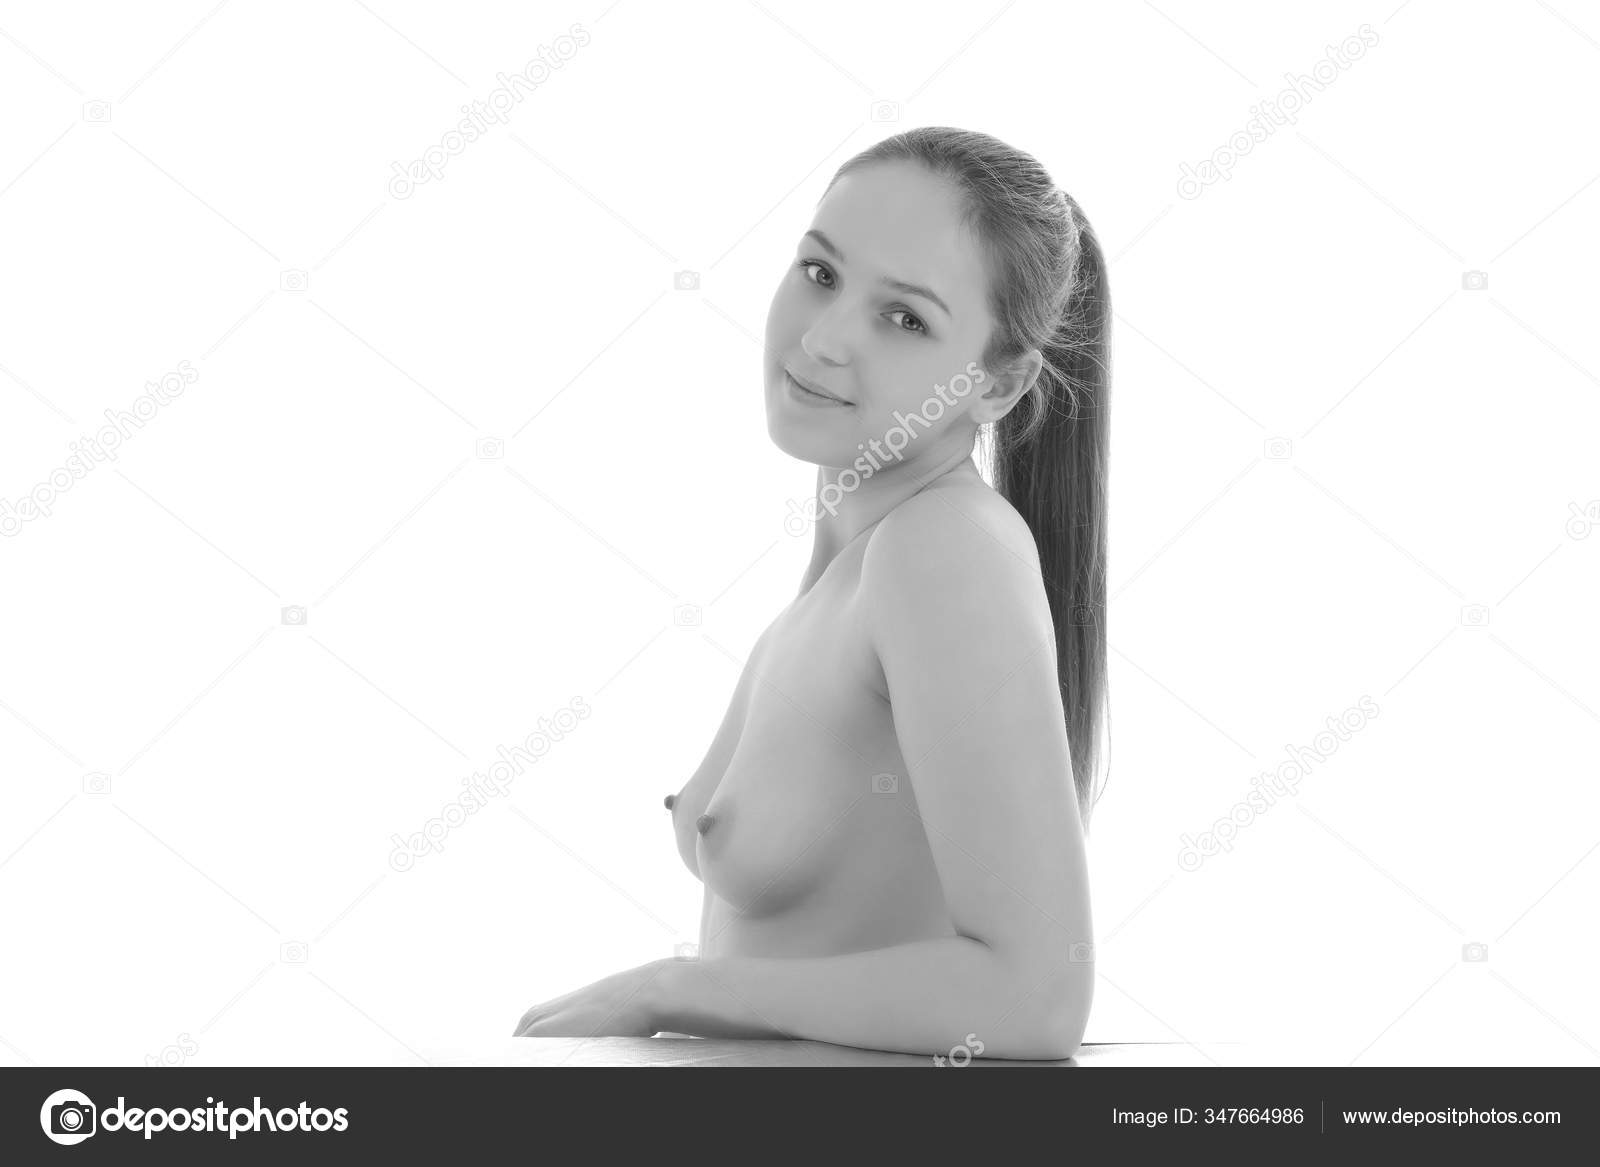 https://st3n.depositphotos.com/2970081/34766/i/1600/depositphotos_347664986-stock-photo-young-sexy-girl-nude-beautiful.jpg